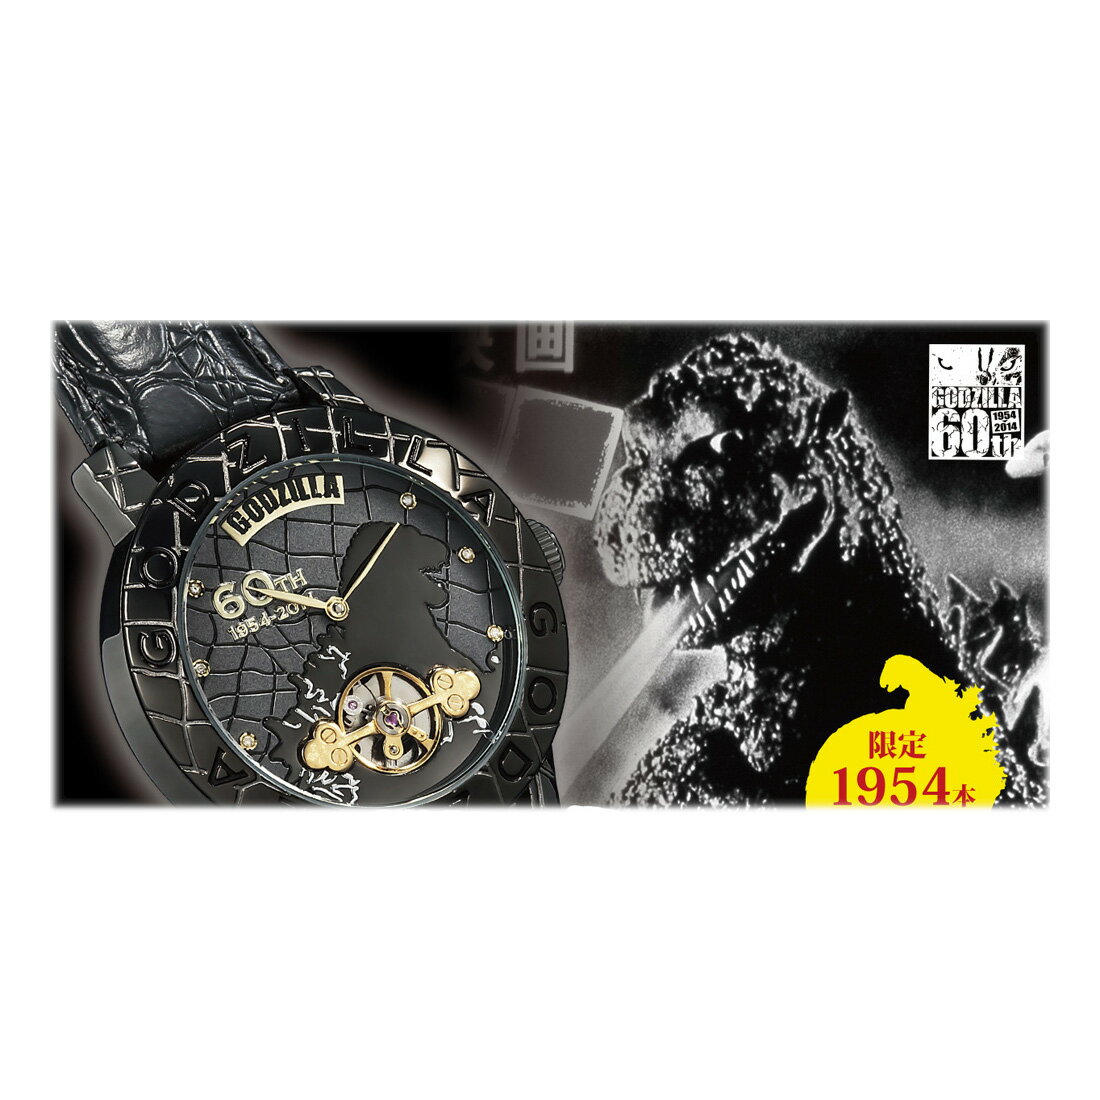 ゴジラ生誕60周年記念腕時計ウォッチ 特撮怪獣映画アイテムグッズ たったの1954本生産